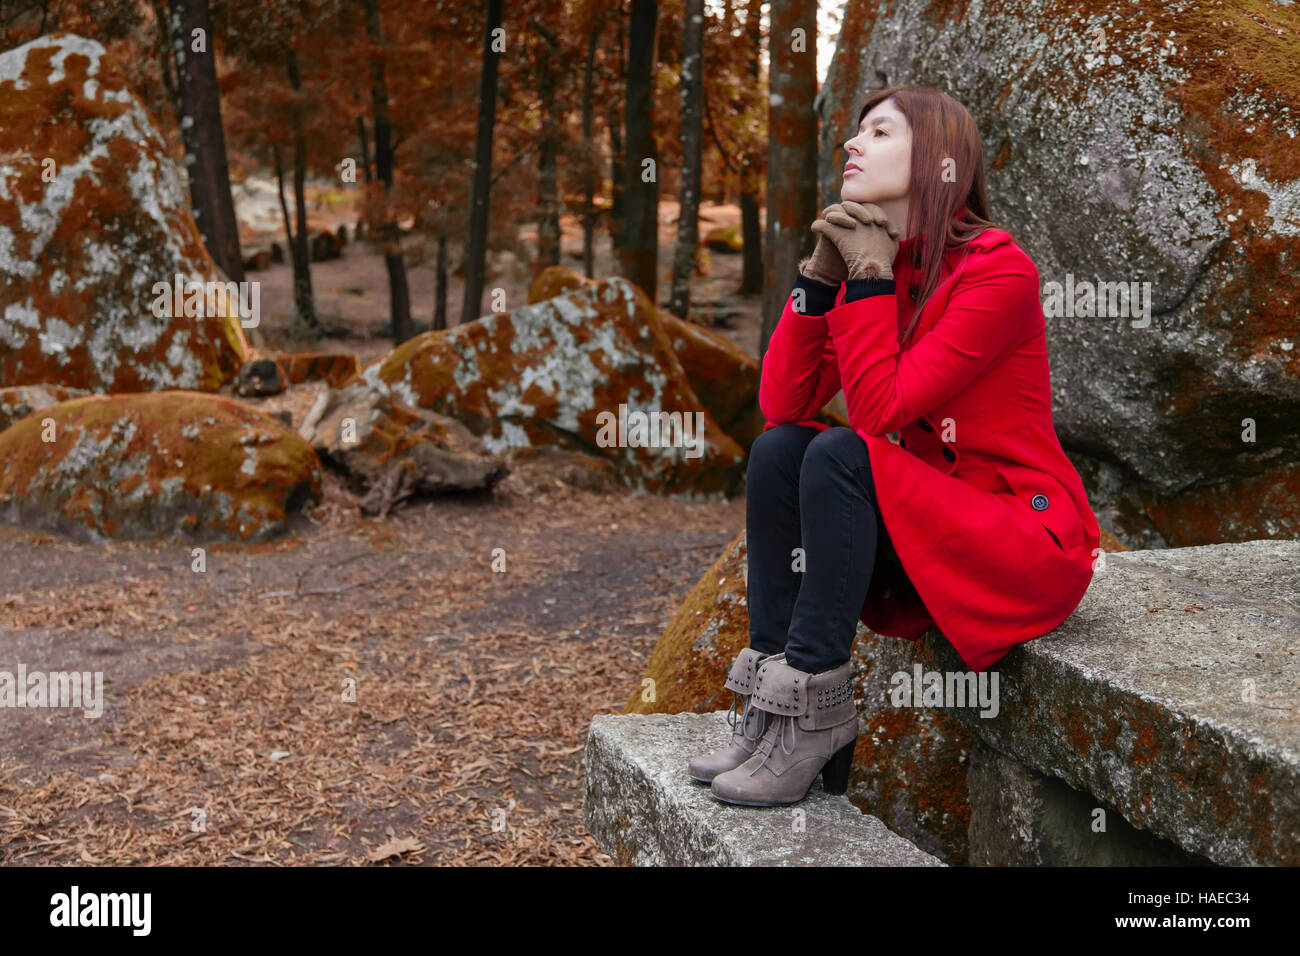 Mujer joven deprimido sentado en una mesa y un banco de piedra en un bosque vistiendo un abrigo rojo durante el invierno Foto de stock